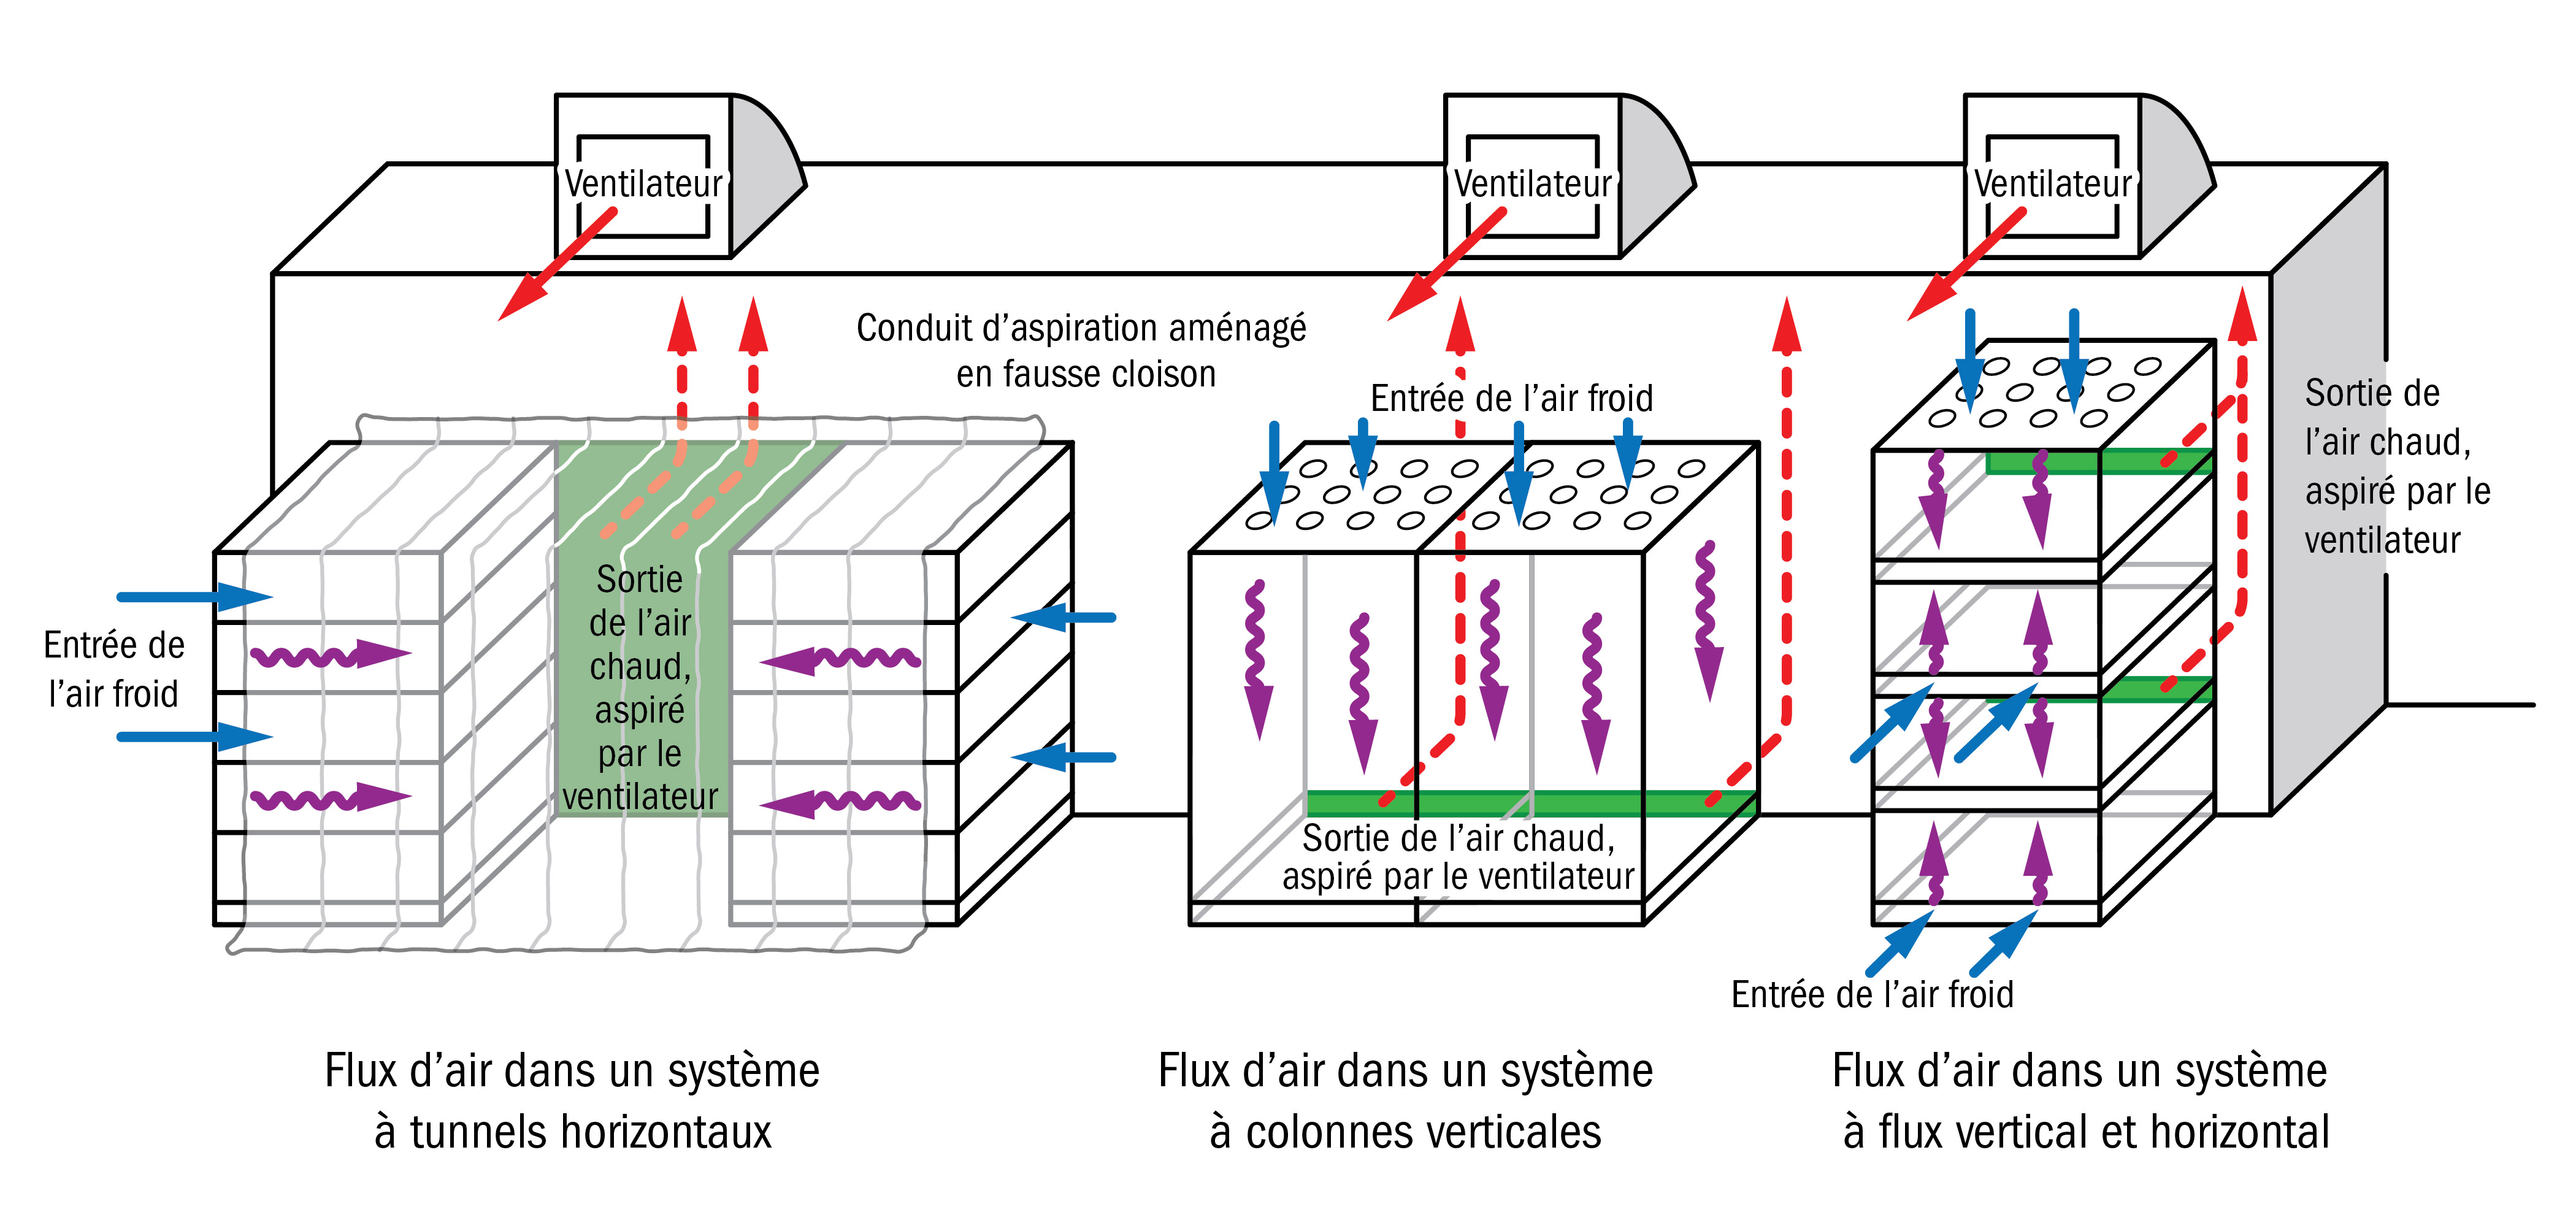 Croquis illustrant les trois systèmes de refroidissement par air forcé décrits dans la présente fiche technique.